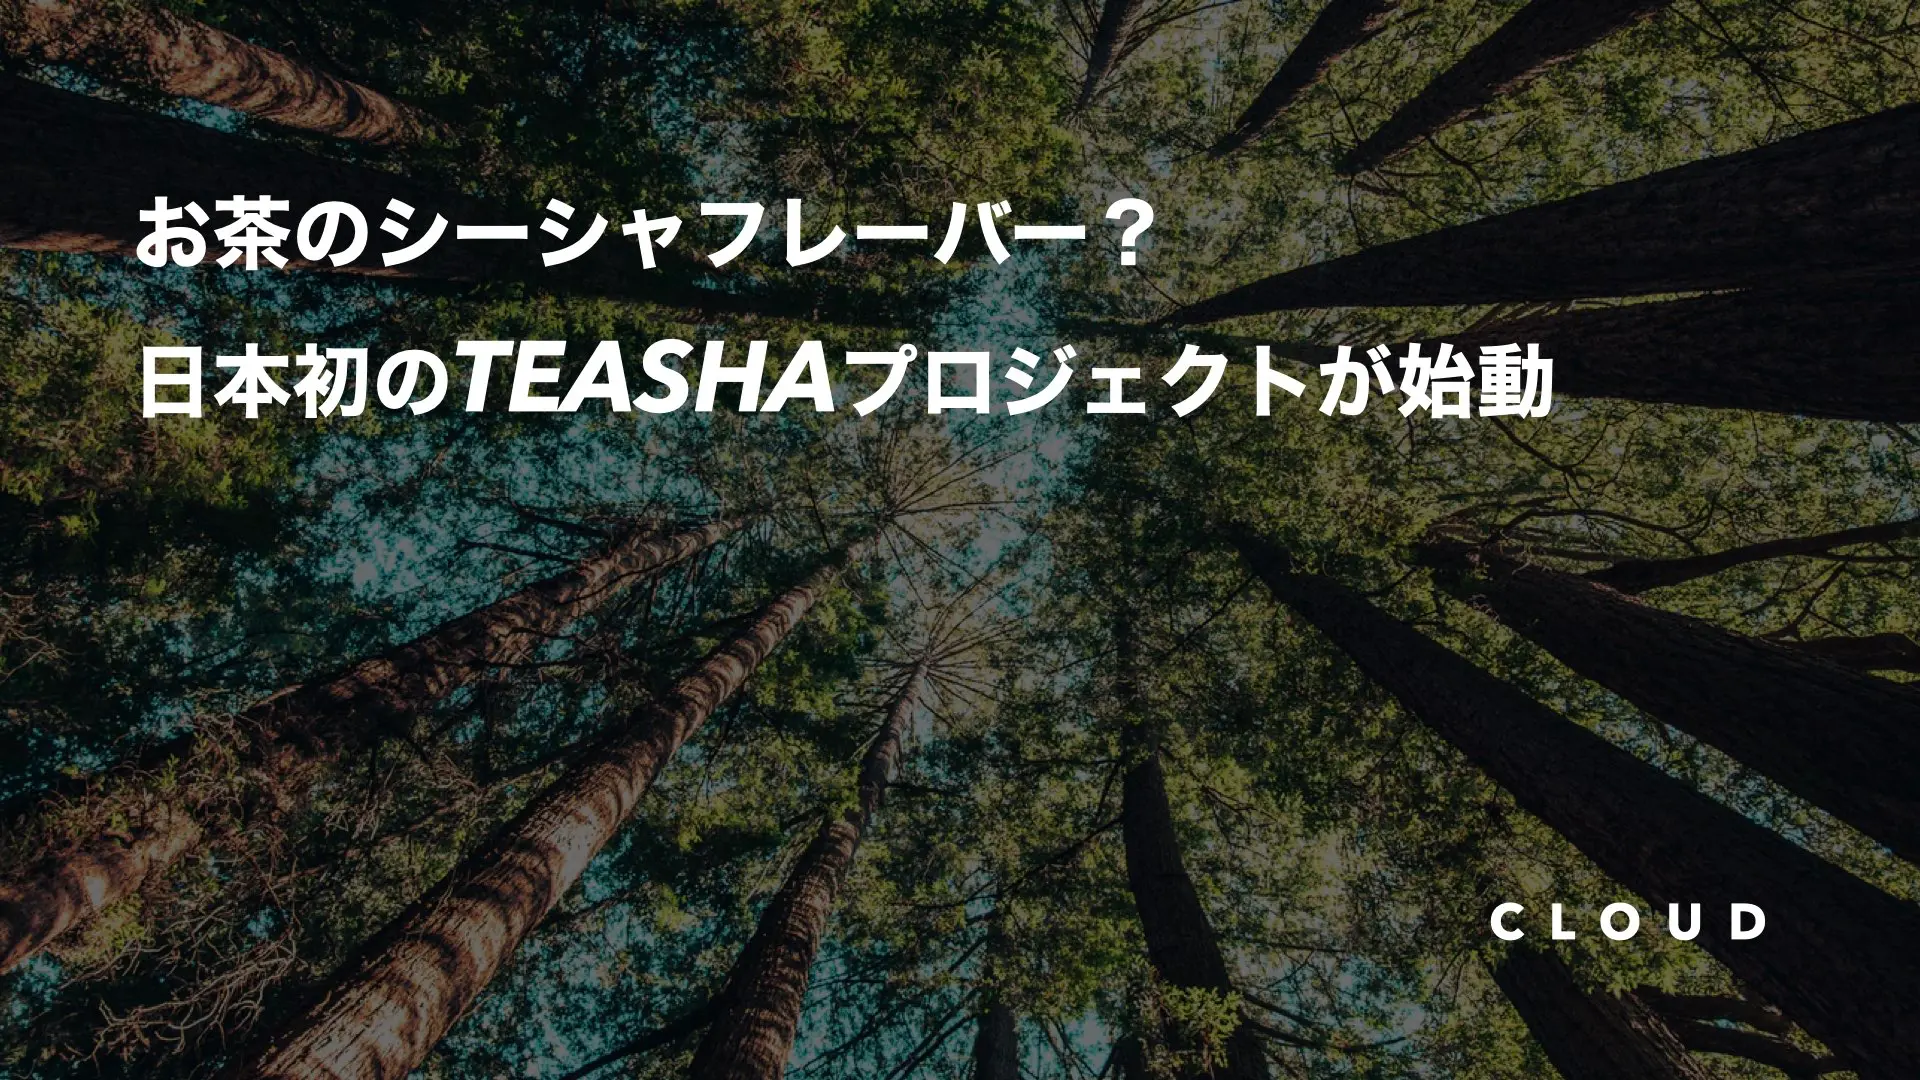 日本初のフレーバーブランド”TEASHA”が始動